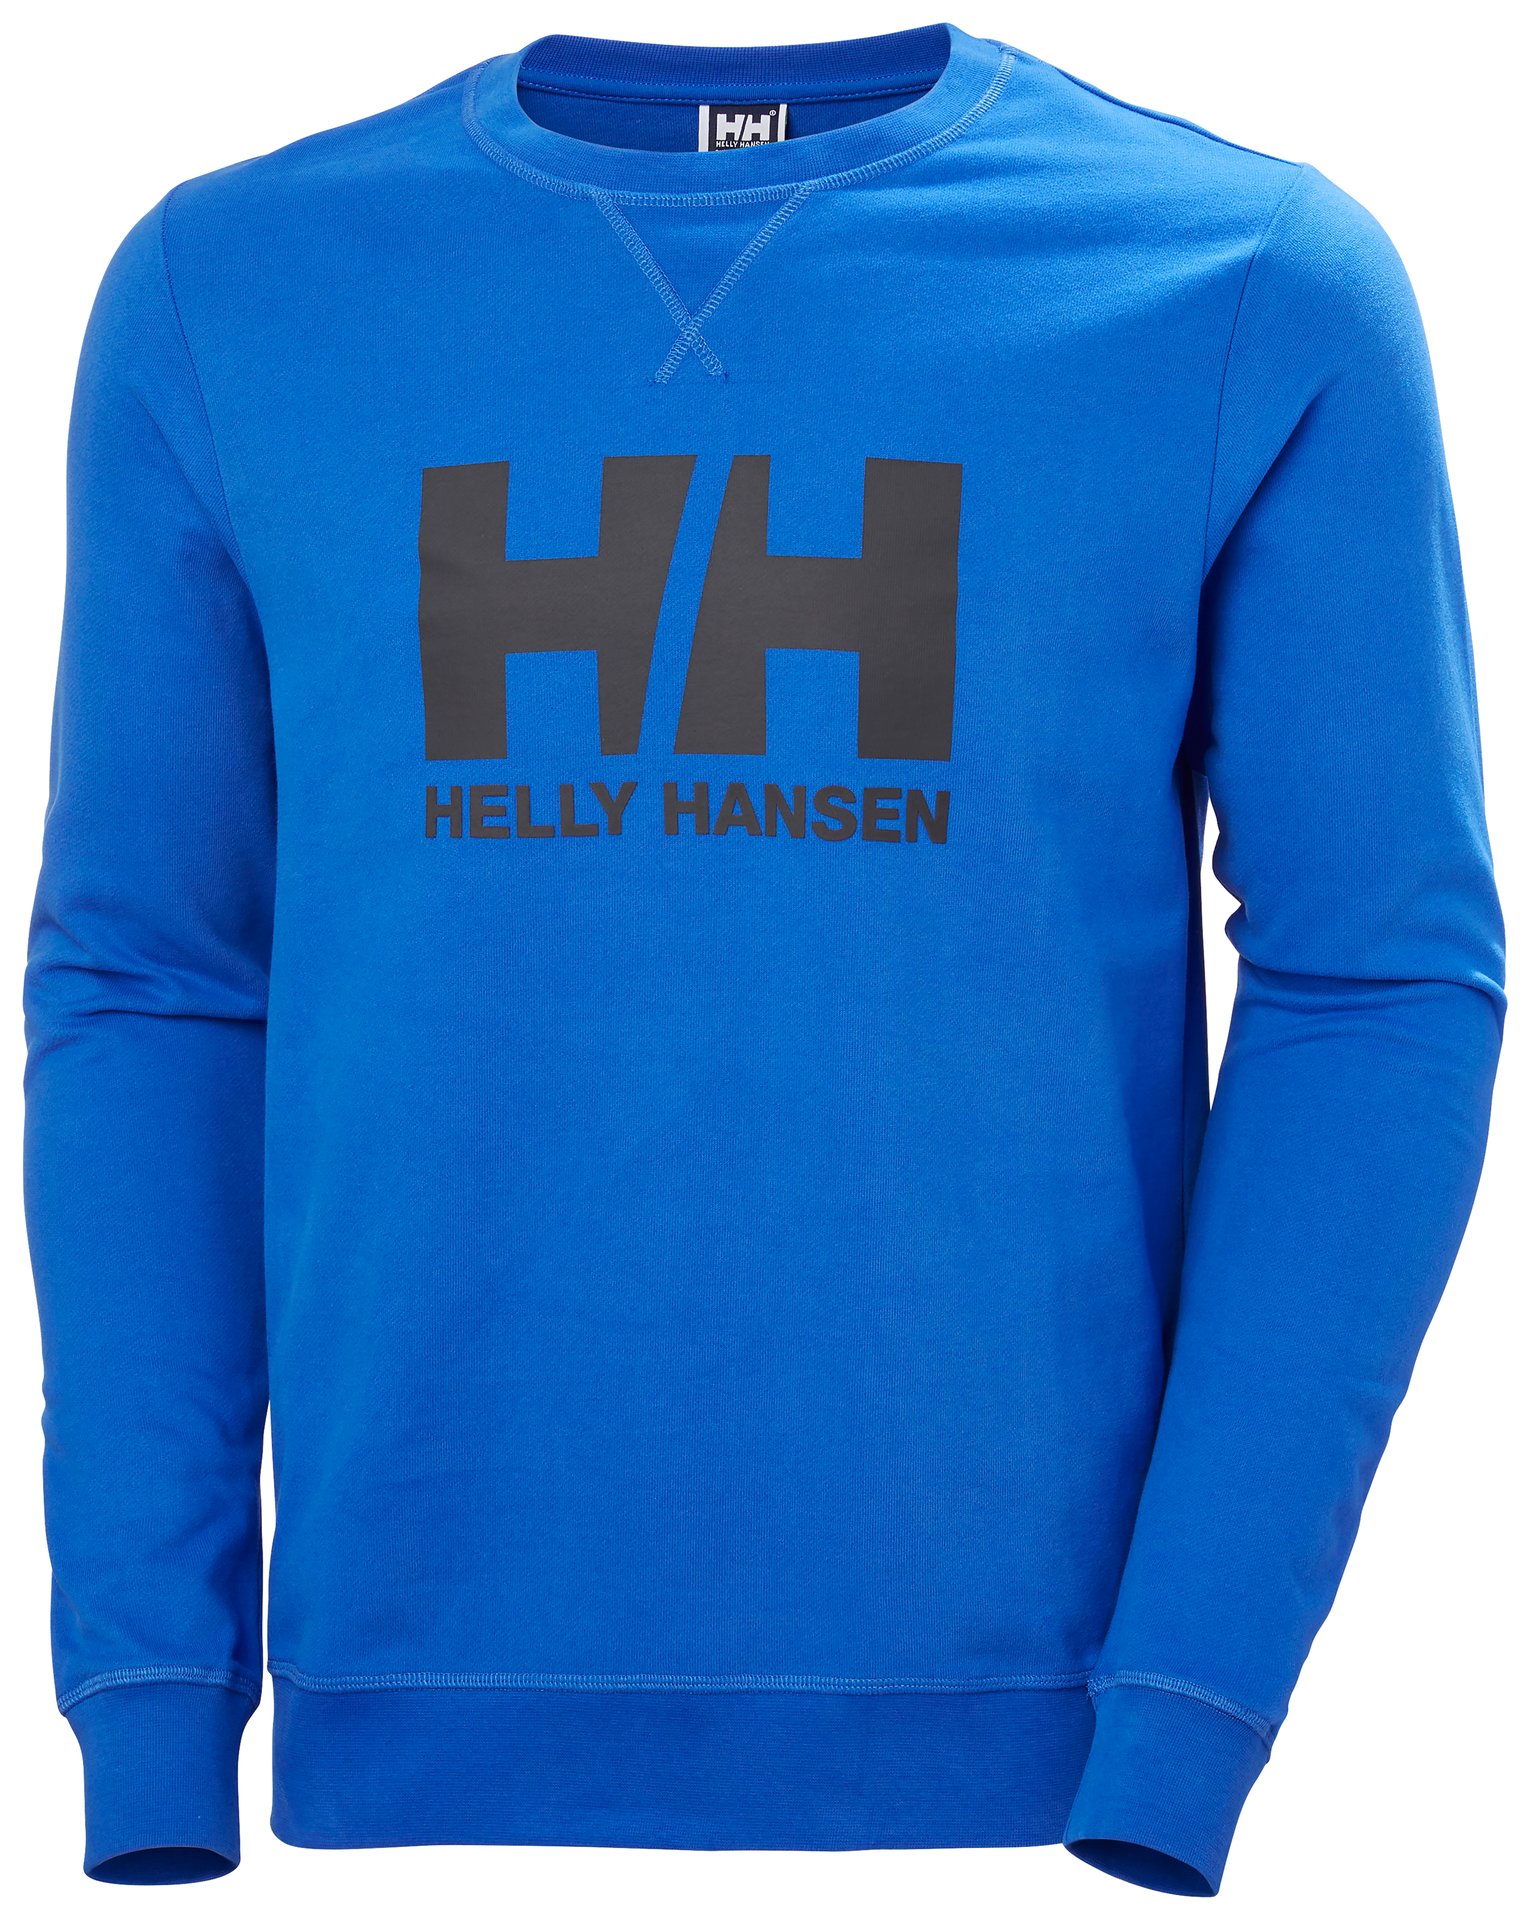 Helly Hansen Mens HH Logo Crew Sweat